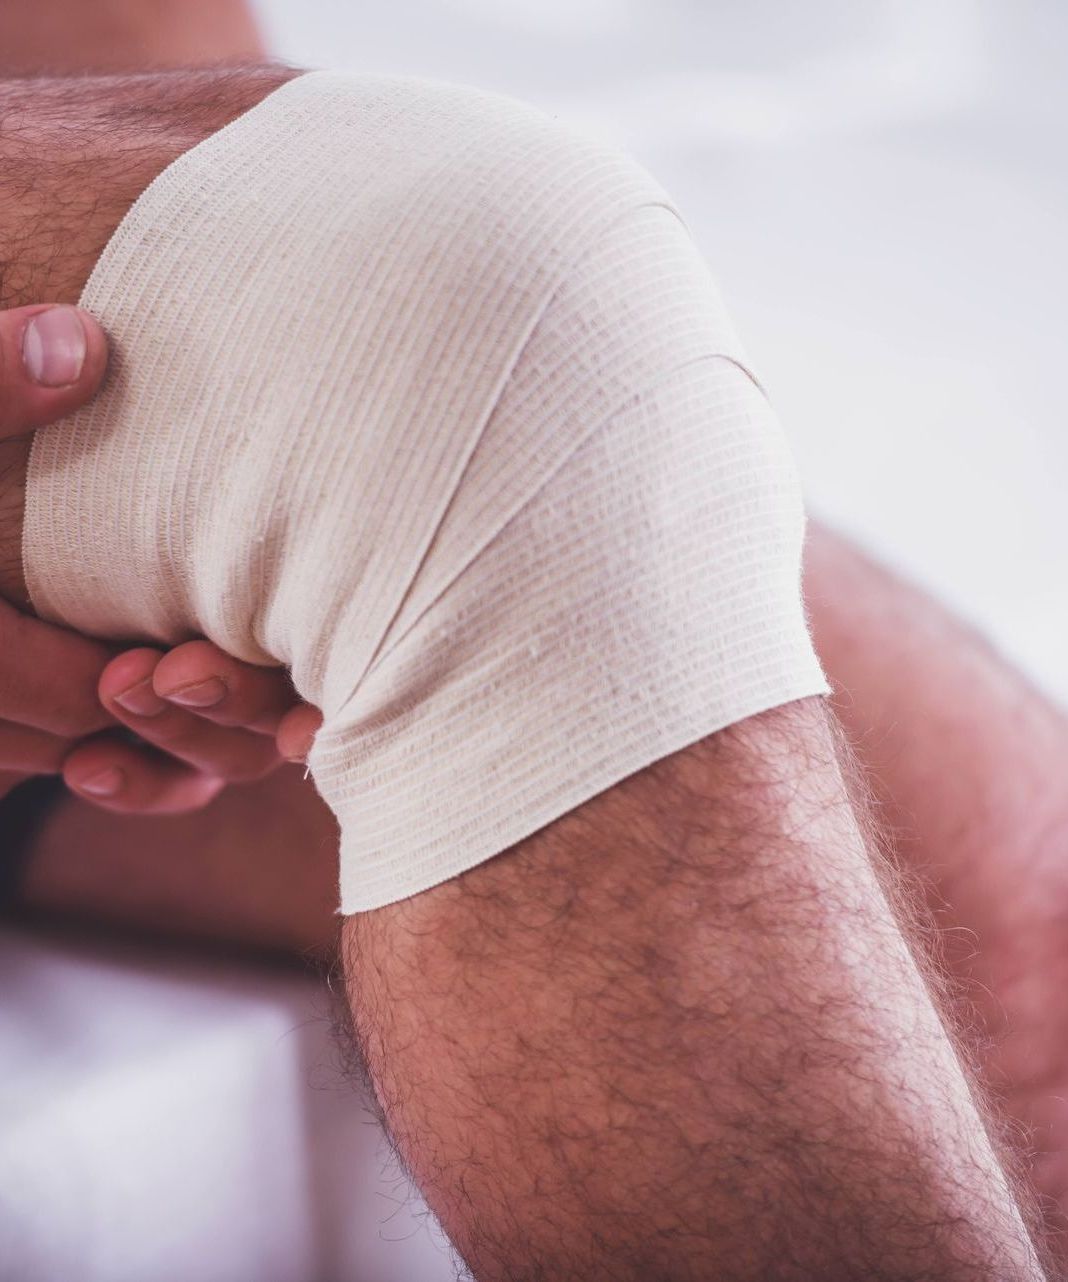 bandage on knee